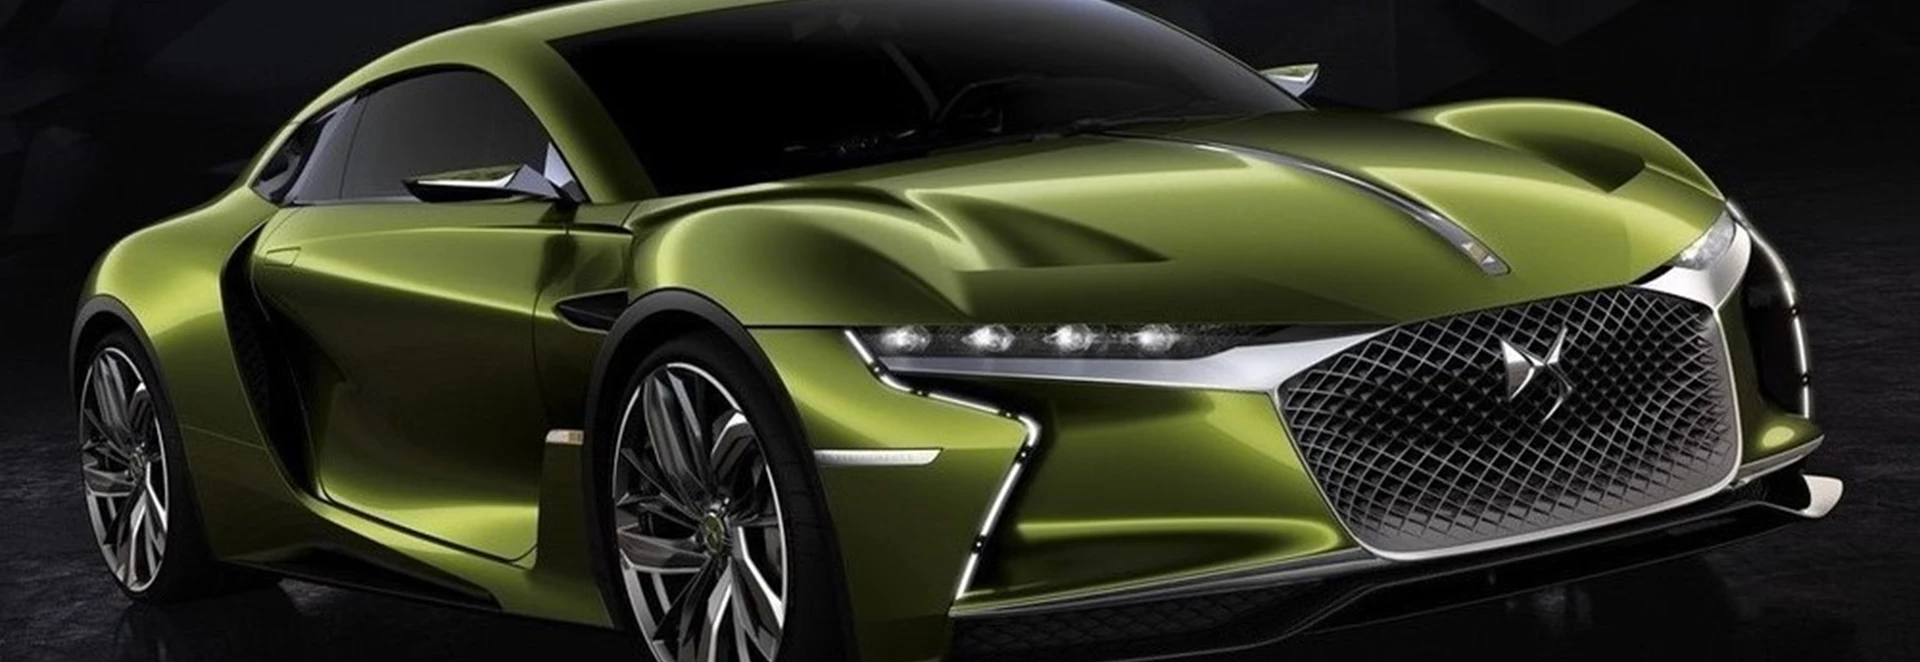 DS reveals electric sports car concept